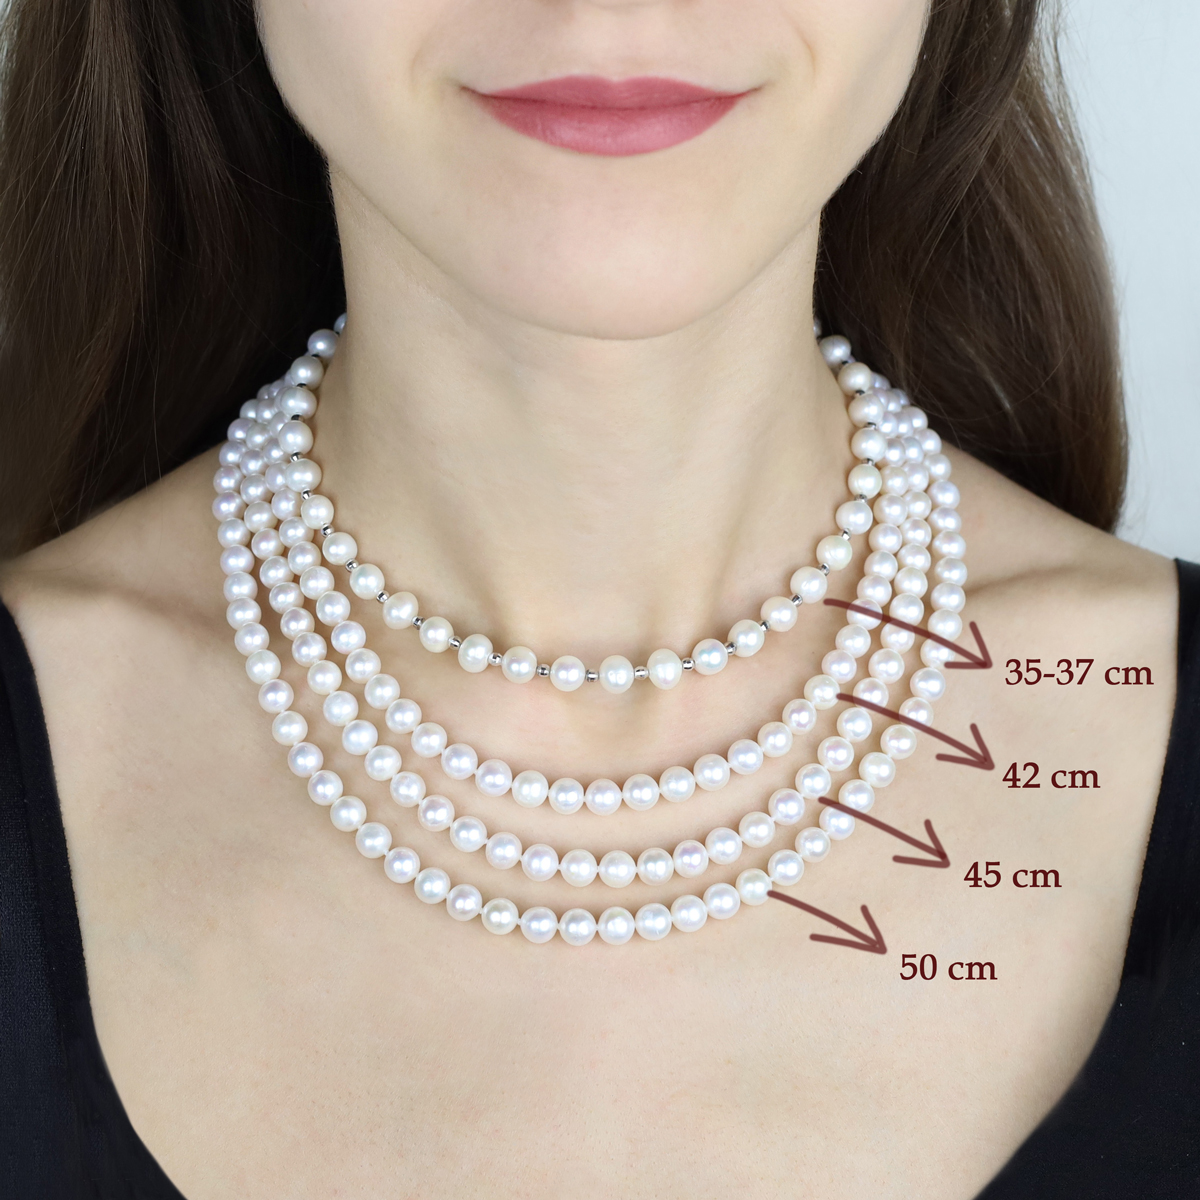 Porównanie długości klasycznych naszyjników perłowych na modelce (obwód szyi modelki 34cm)